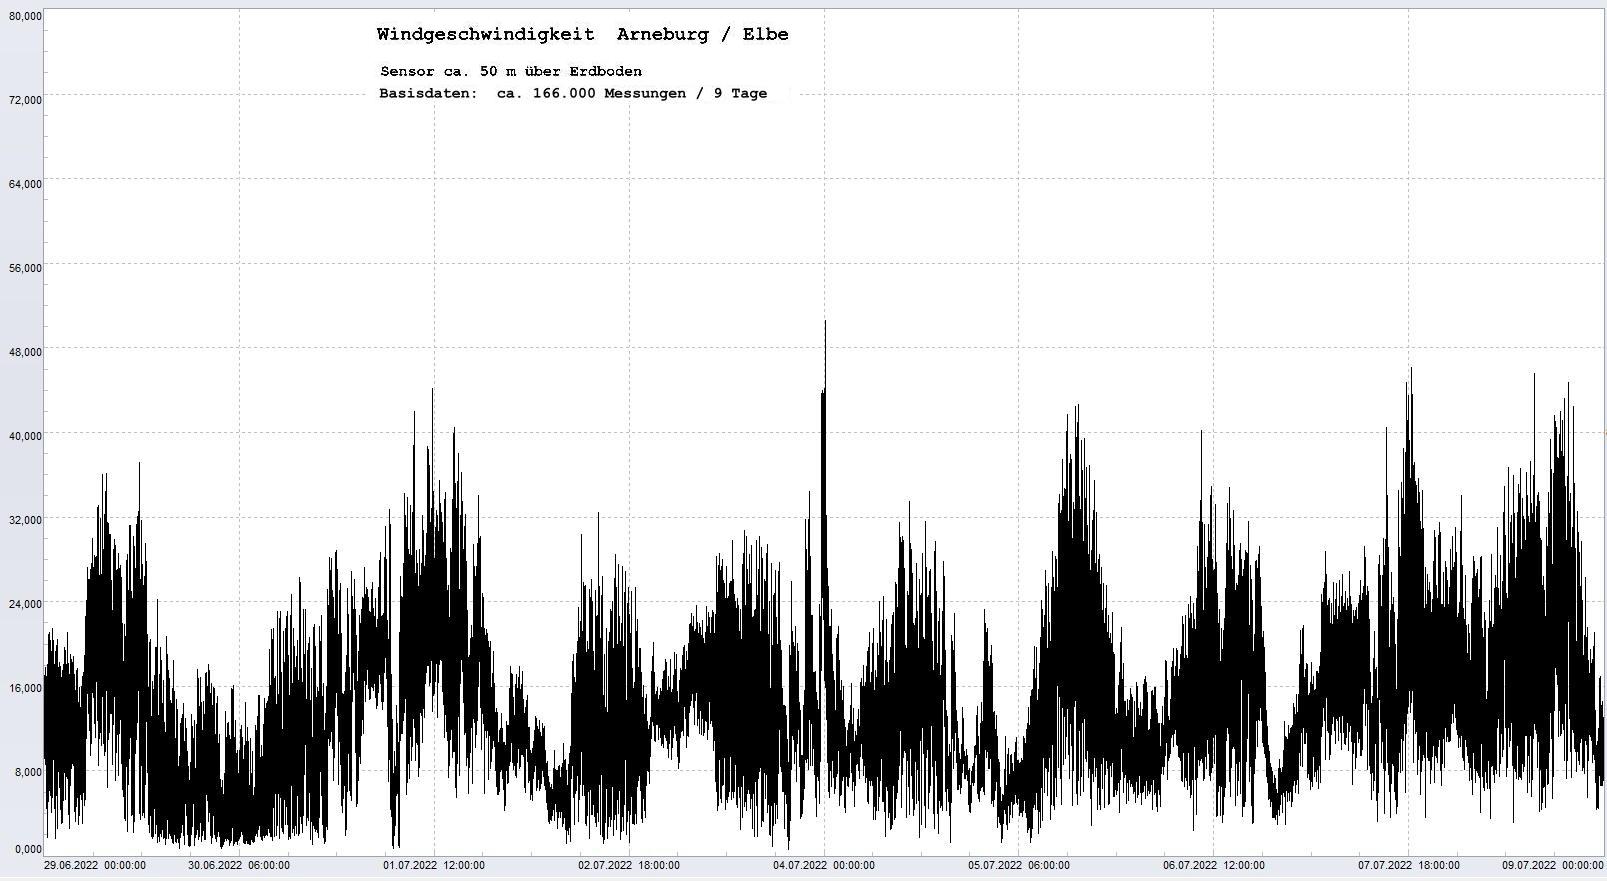 Arneburg 9 Tage Histogramm Winddaten, 
  Sensor auf Gebude, ca. 50 m ber Erdboden, Basis: 5s-Aufzeichnung